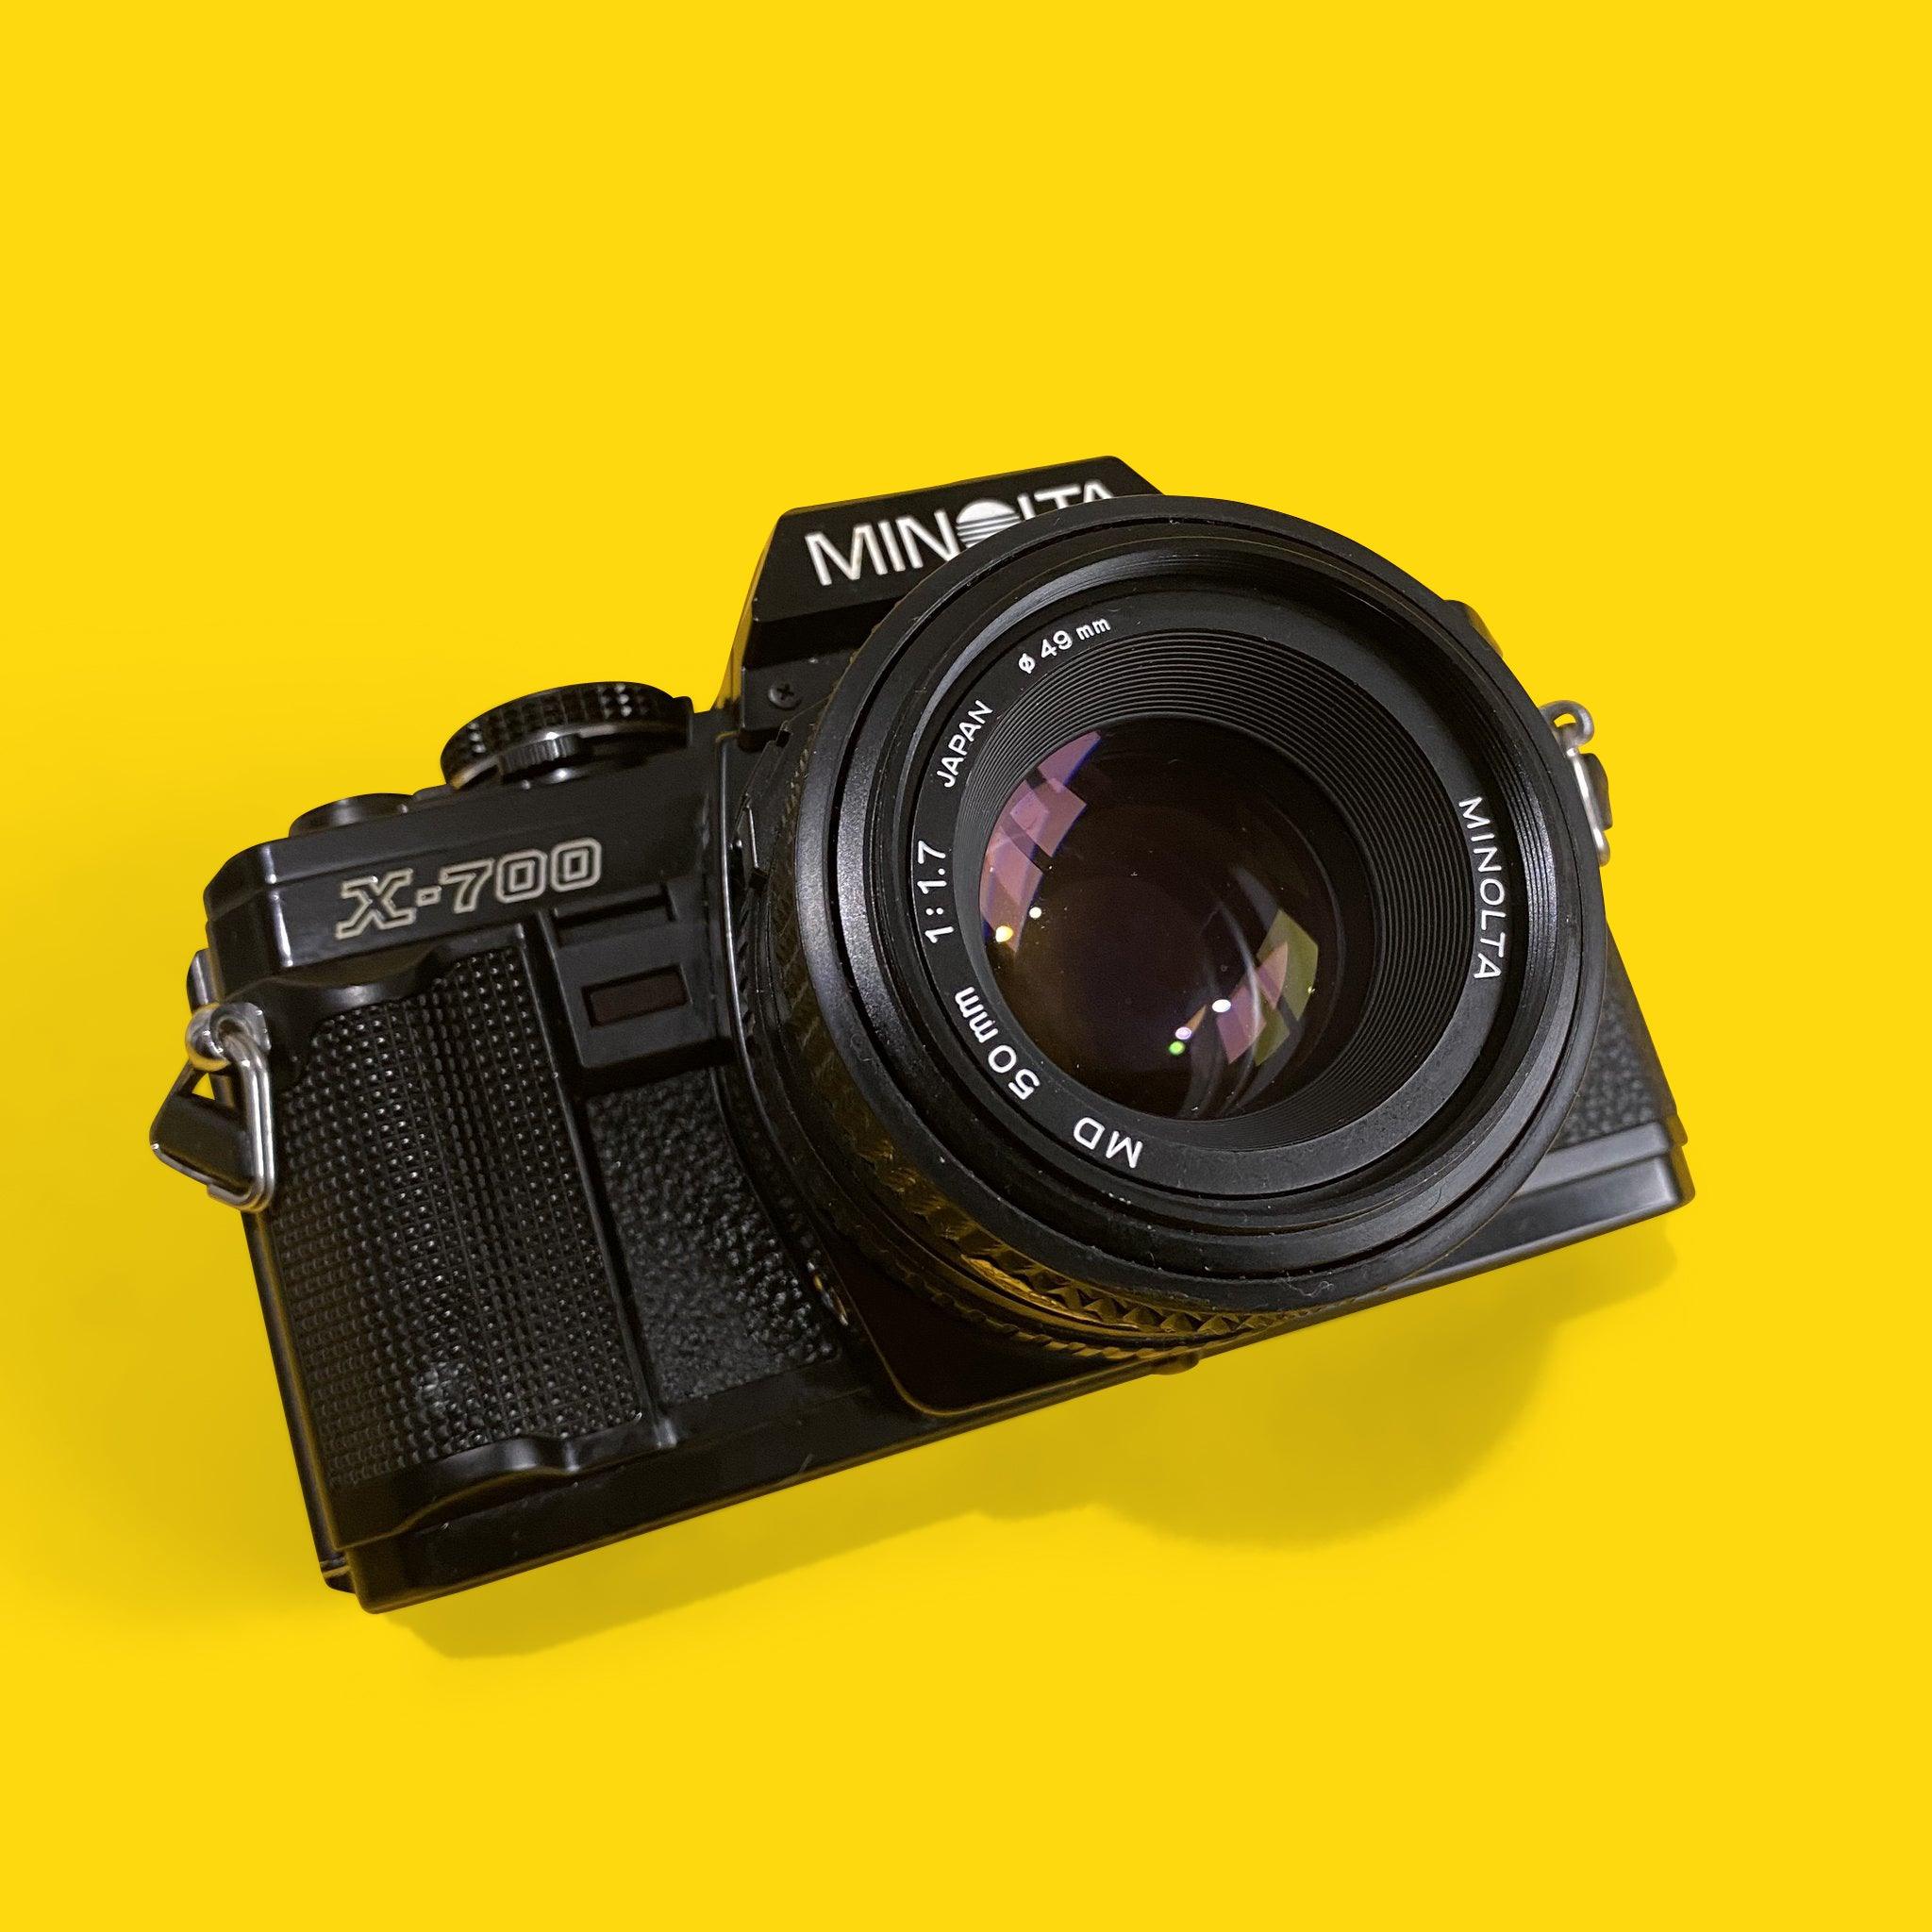 ミノルタ x700 シルバー オマケレンズ付きカメラ - インスタントカメラ